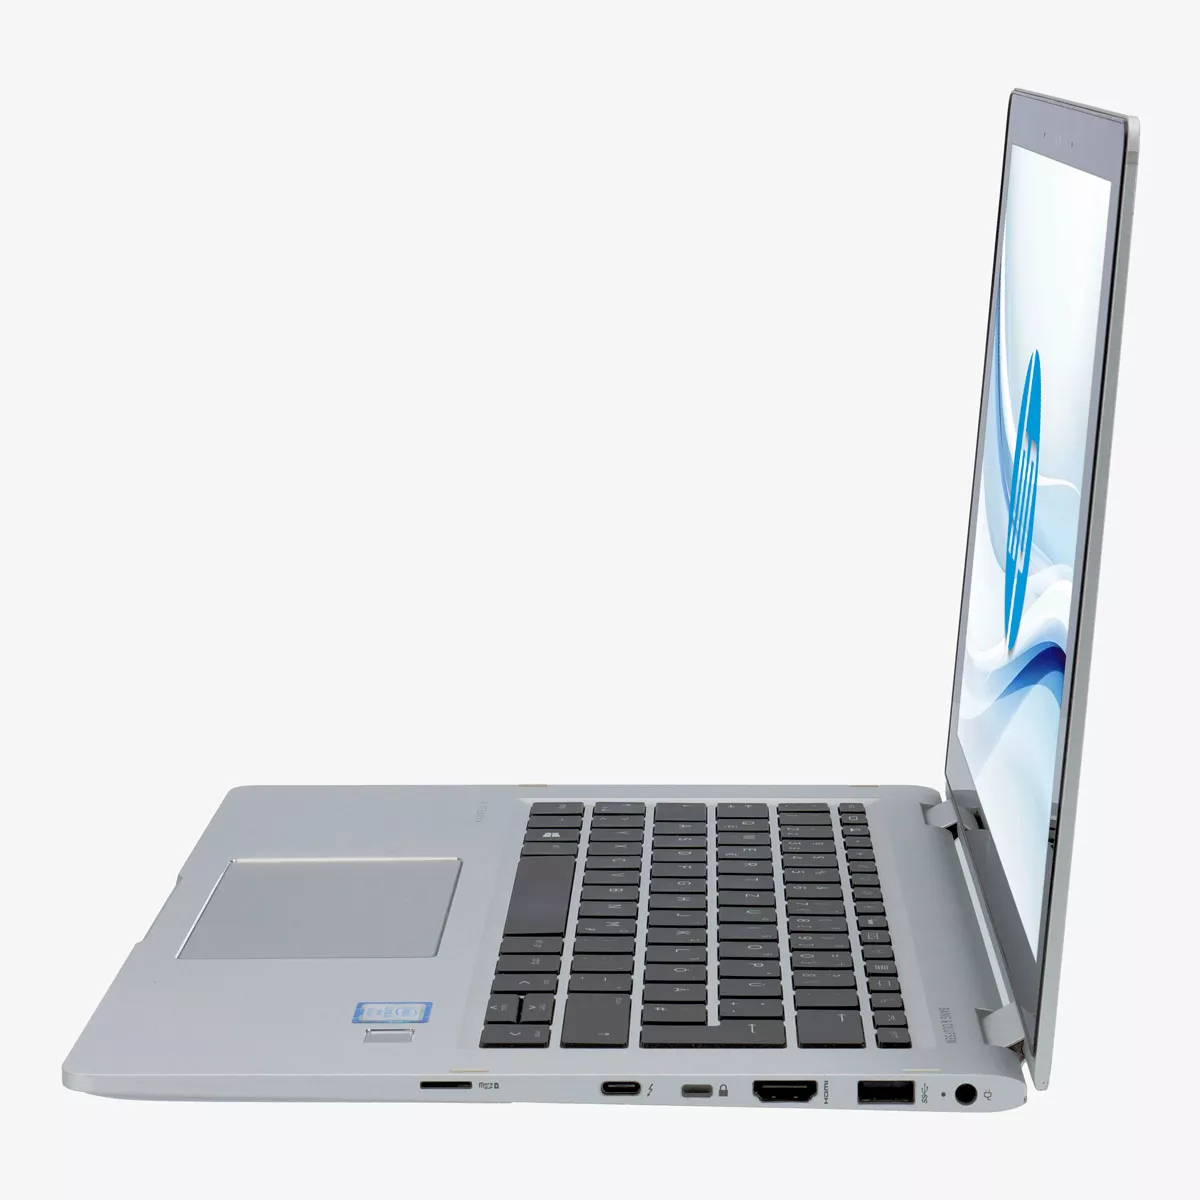 HP EliteBook x360 830 G6 Core i7 8665U 16 GB 240 GB M.2 nVME SSD Touch Webcam A+